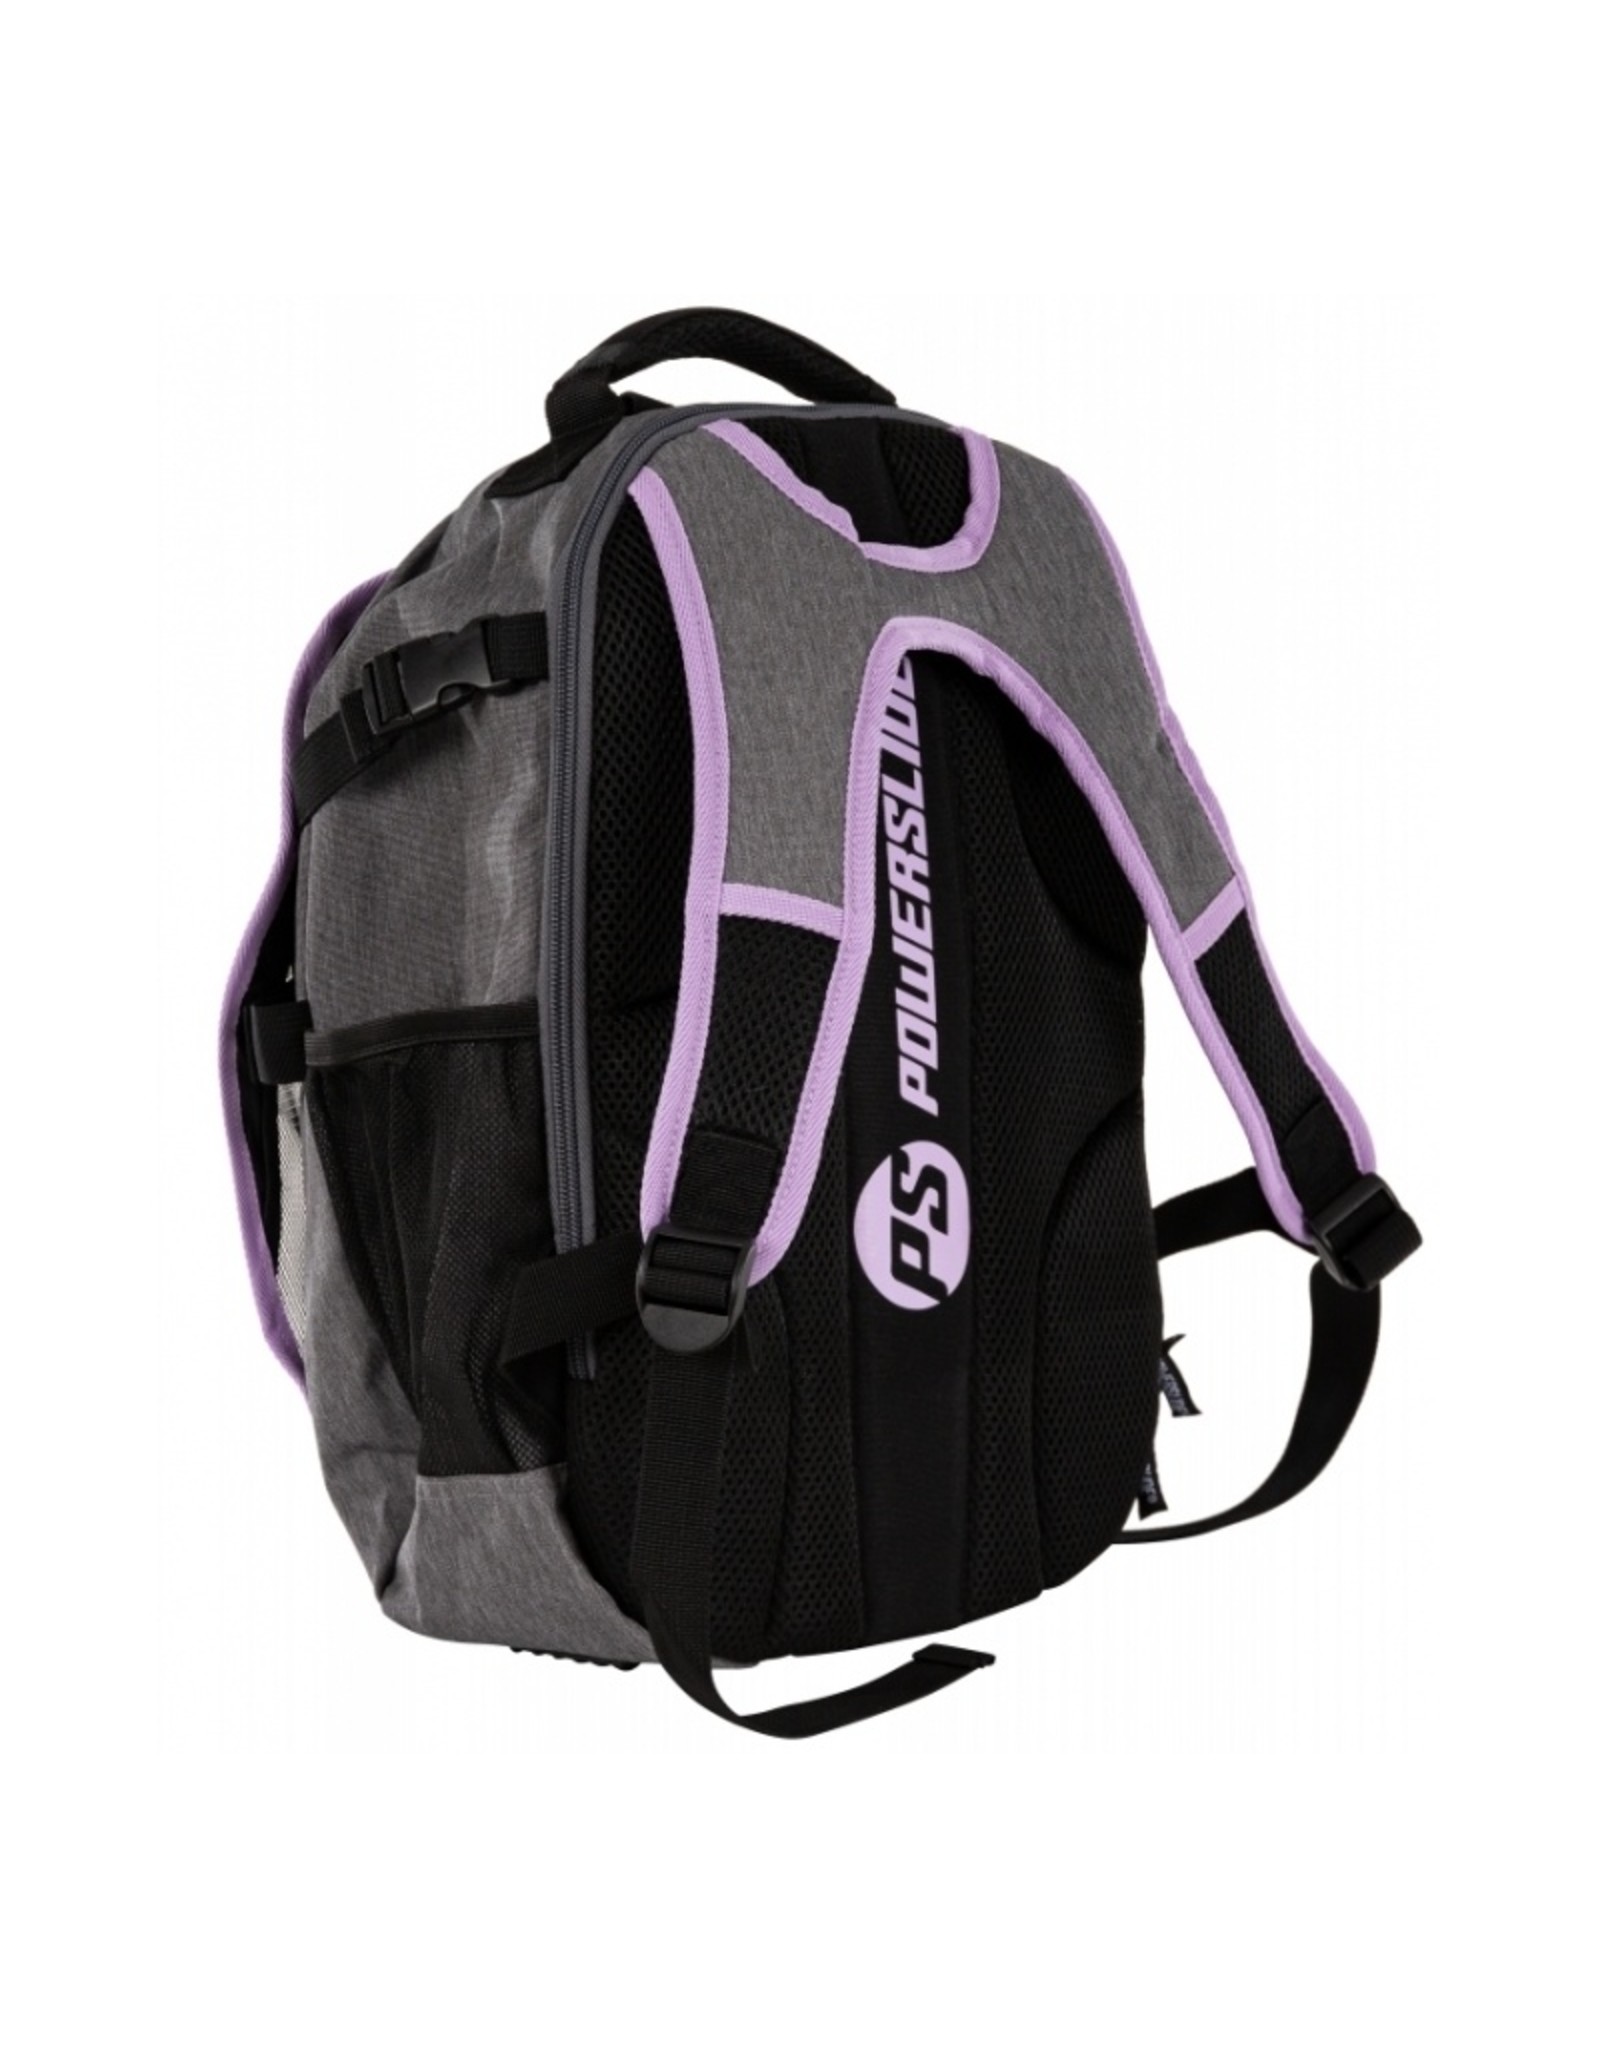 Powerslide Fitness Backpack, Dark grey/Purple